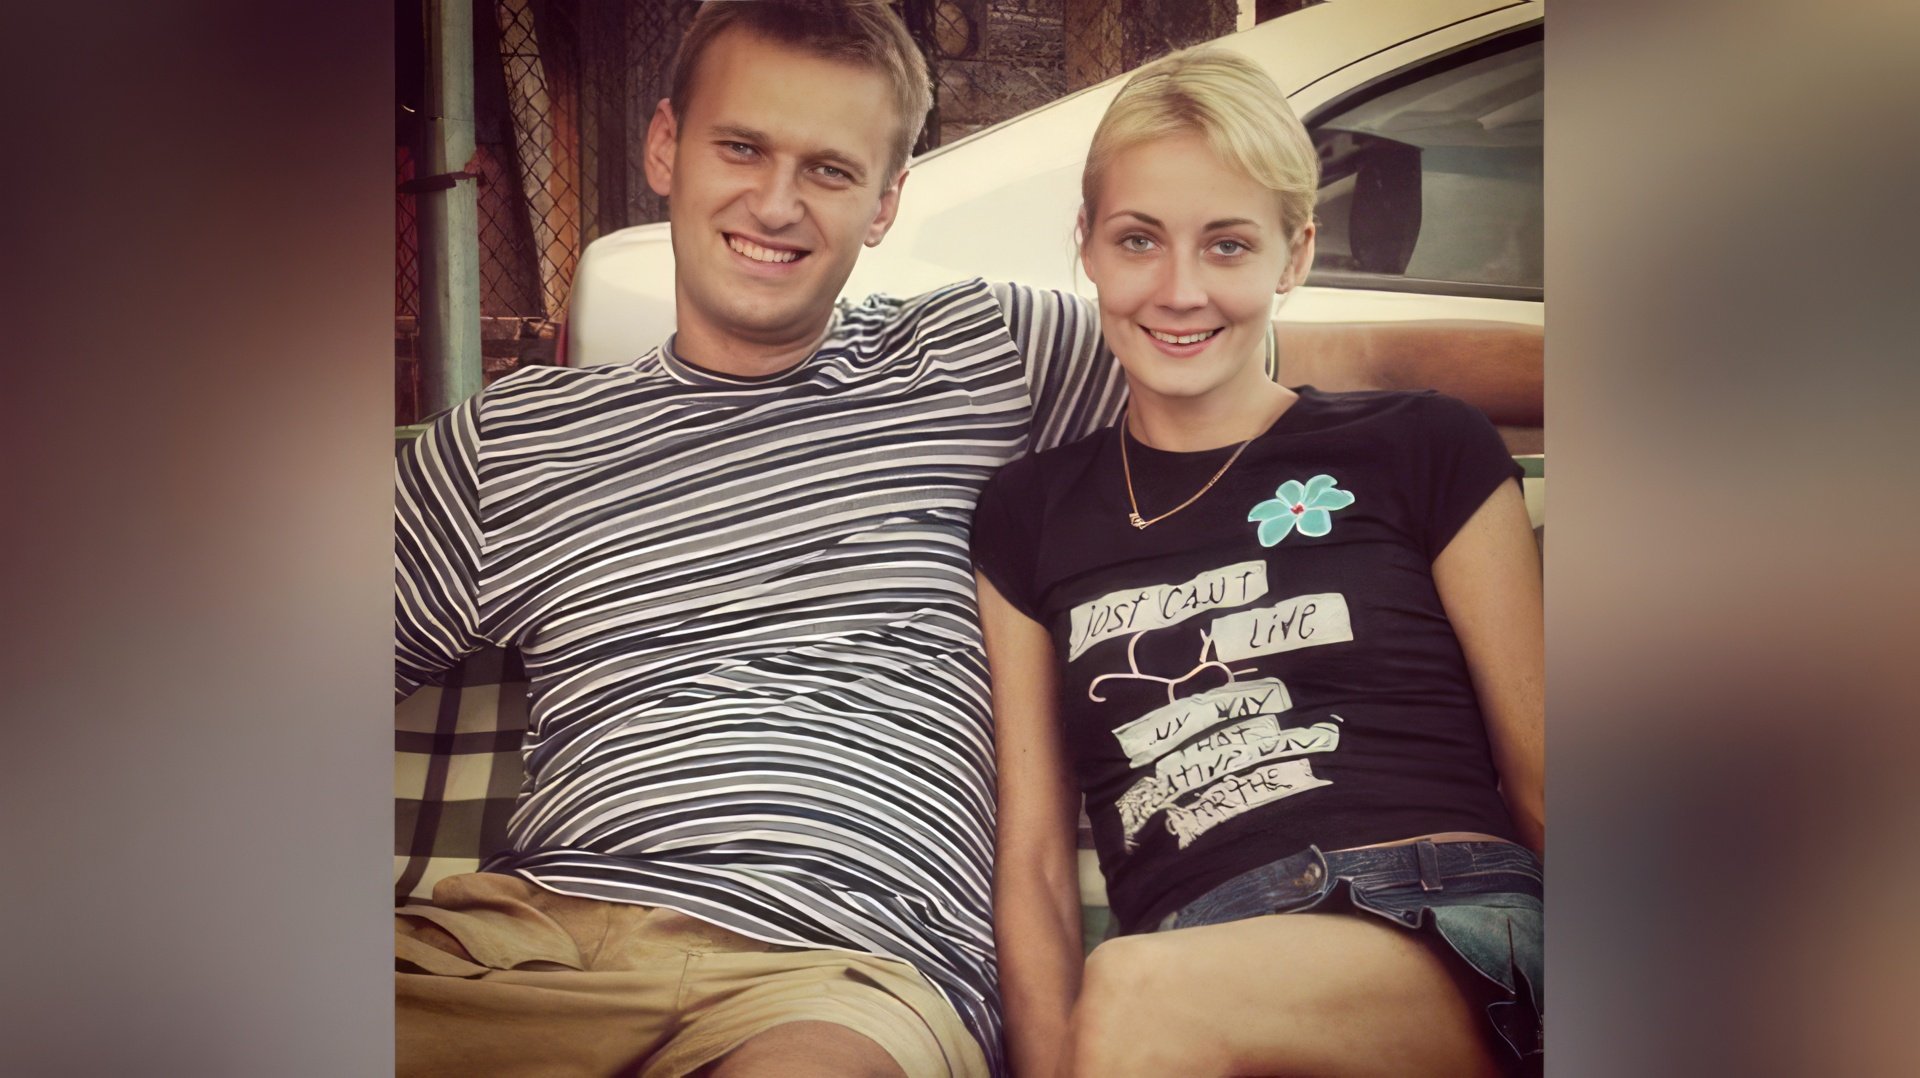 Yulia Abrosimova and Alexei Navalny in their youth